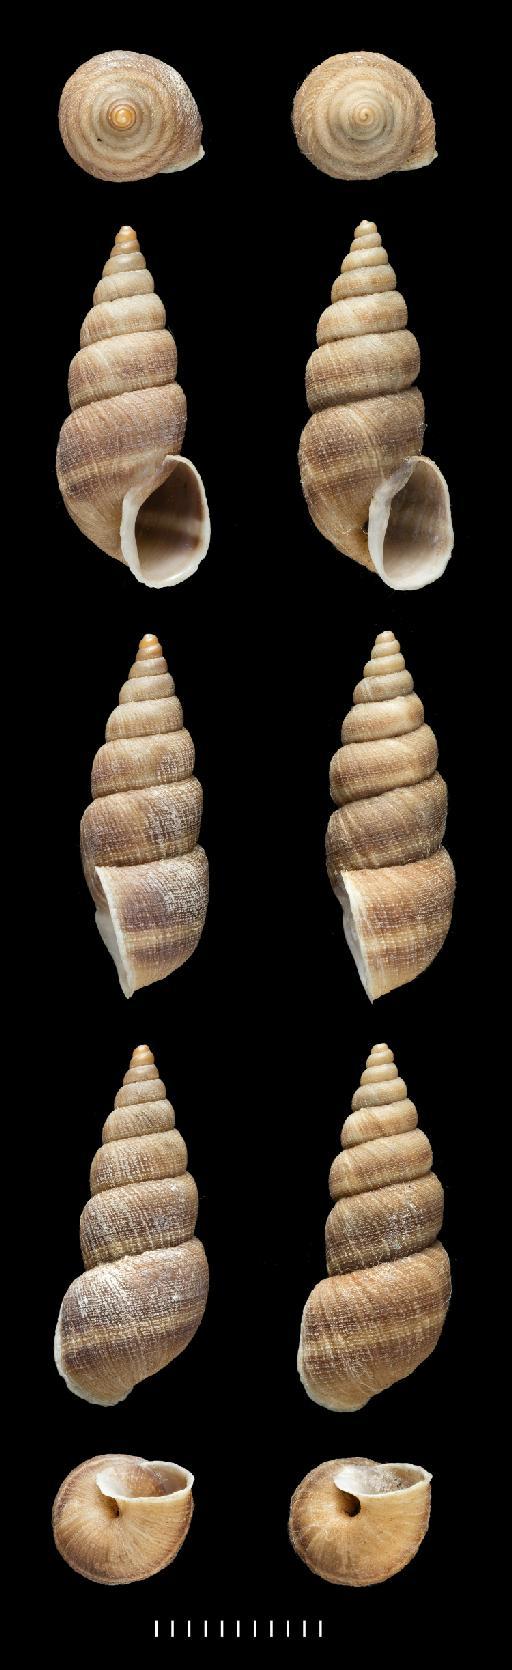 Bulinus rugulosus Sowerby, 1833 - 1975177, PARALECTOTYPES, Bulinus rugulosus Sowerby, 1833